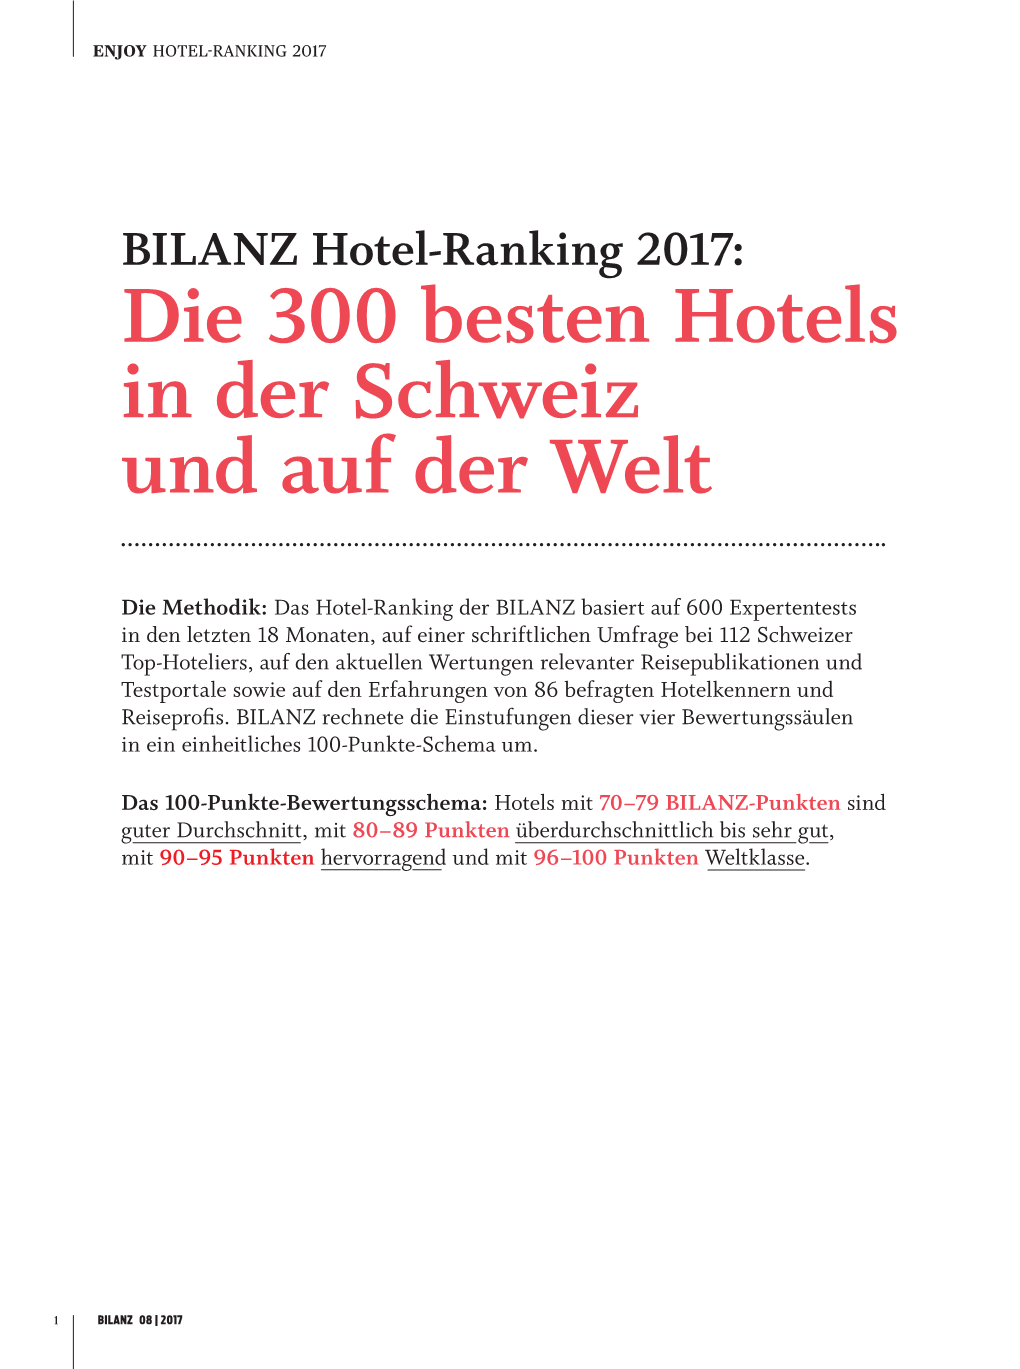 BILANZ Hotel-Ranking 2017: Die 300 Besten Hotels in Der Schweiz Und Auf Der Welt